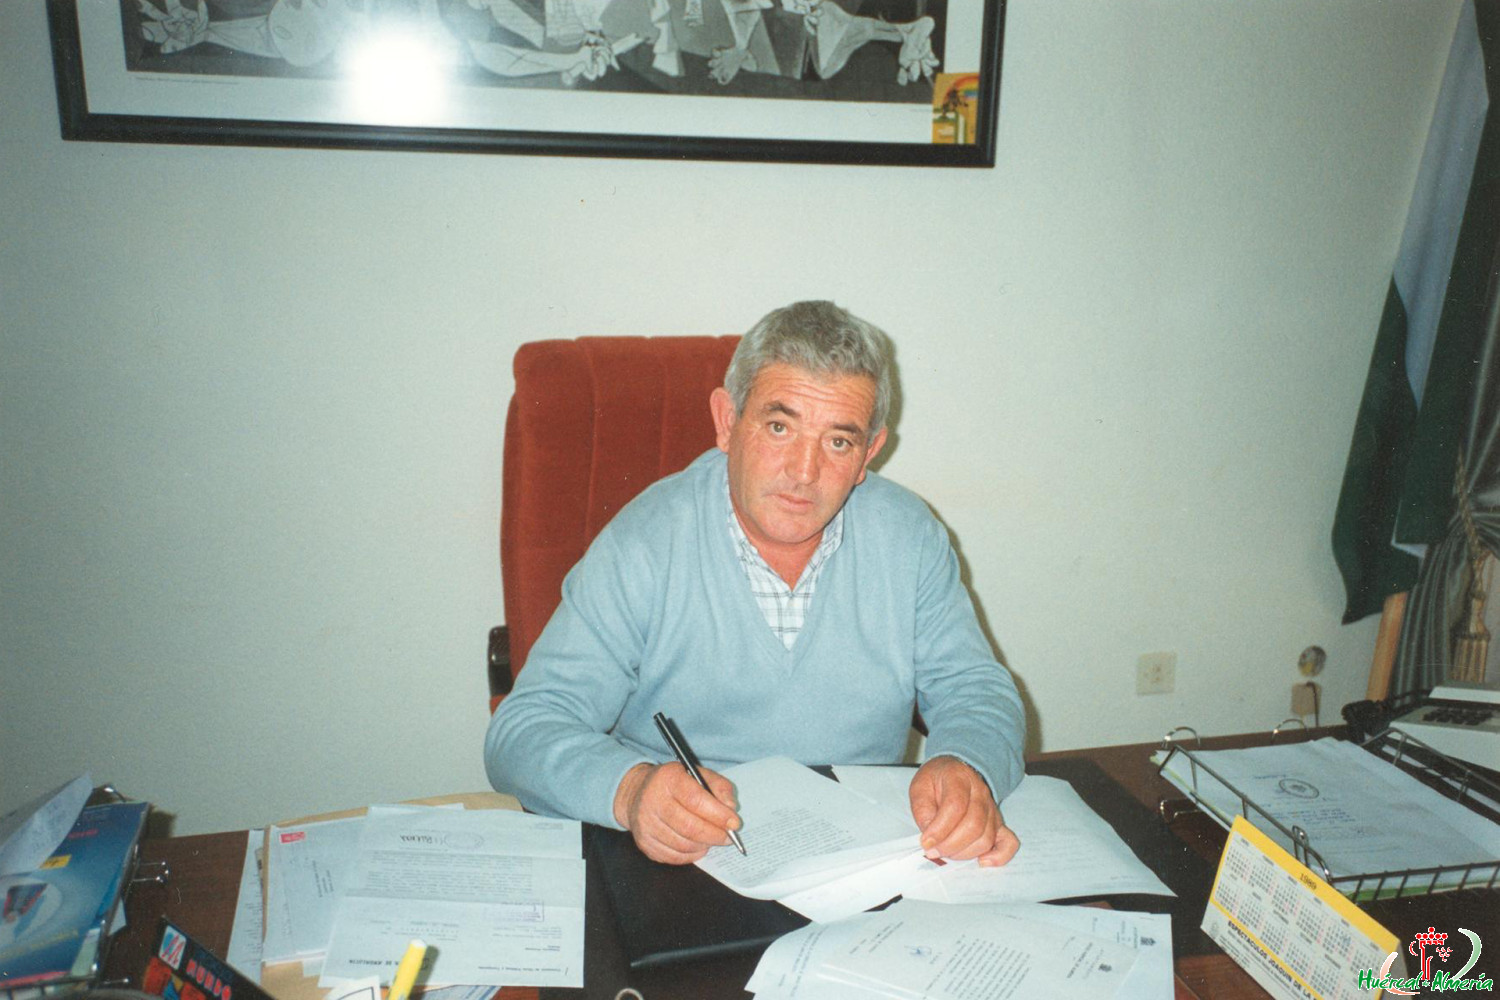 Alcalde de Huércal de Almería ( 1991?-199?)